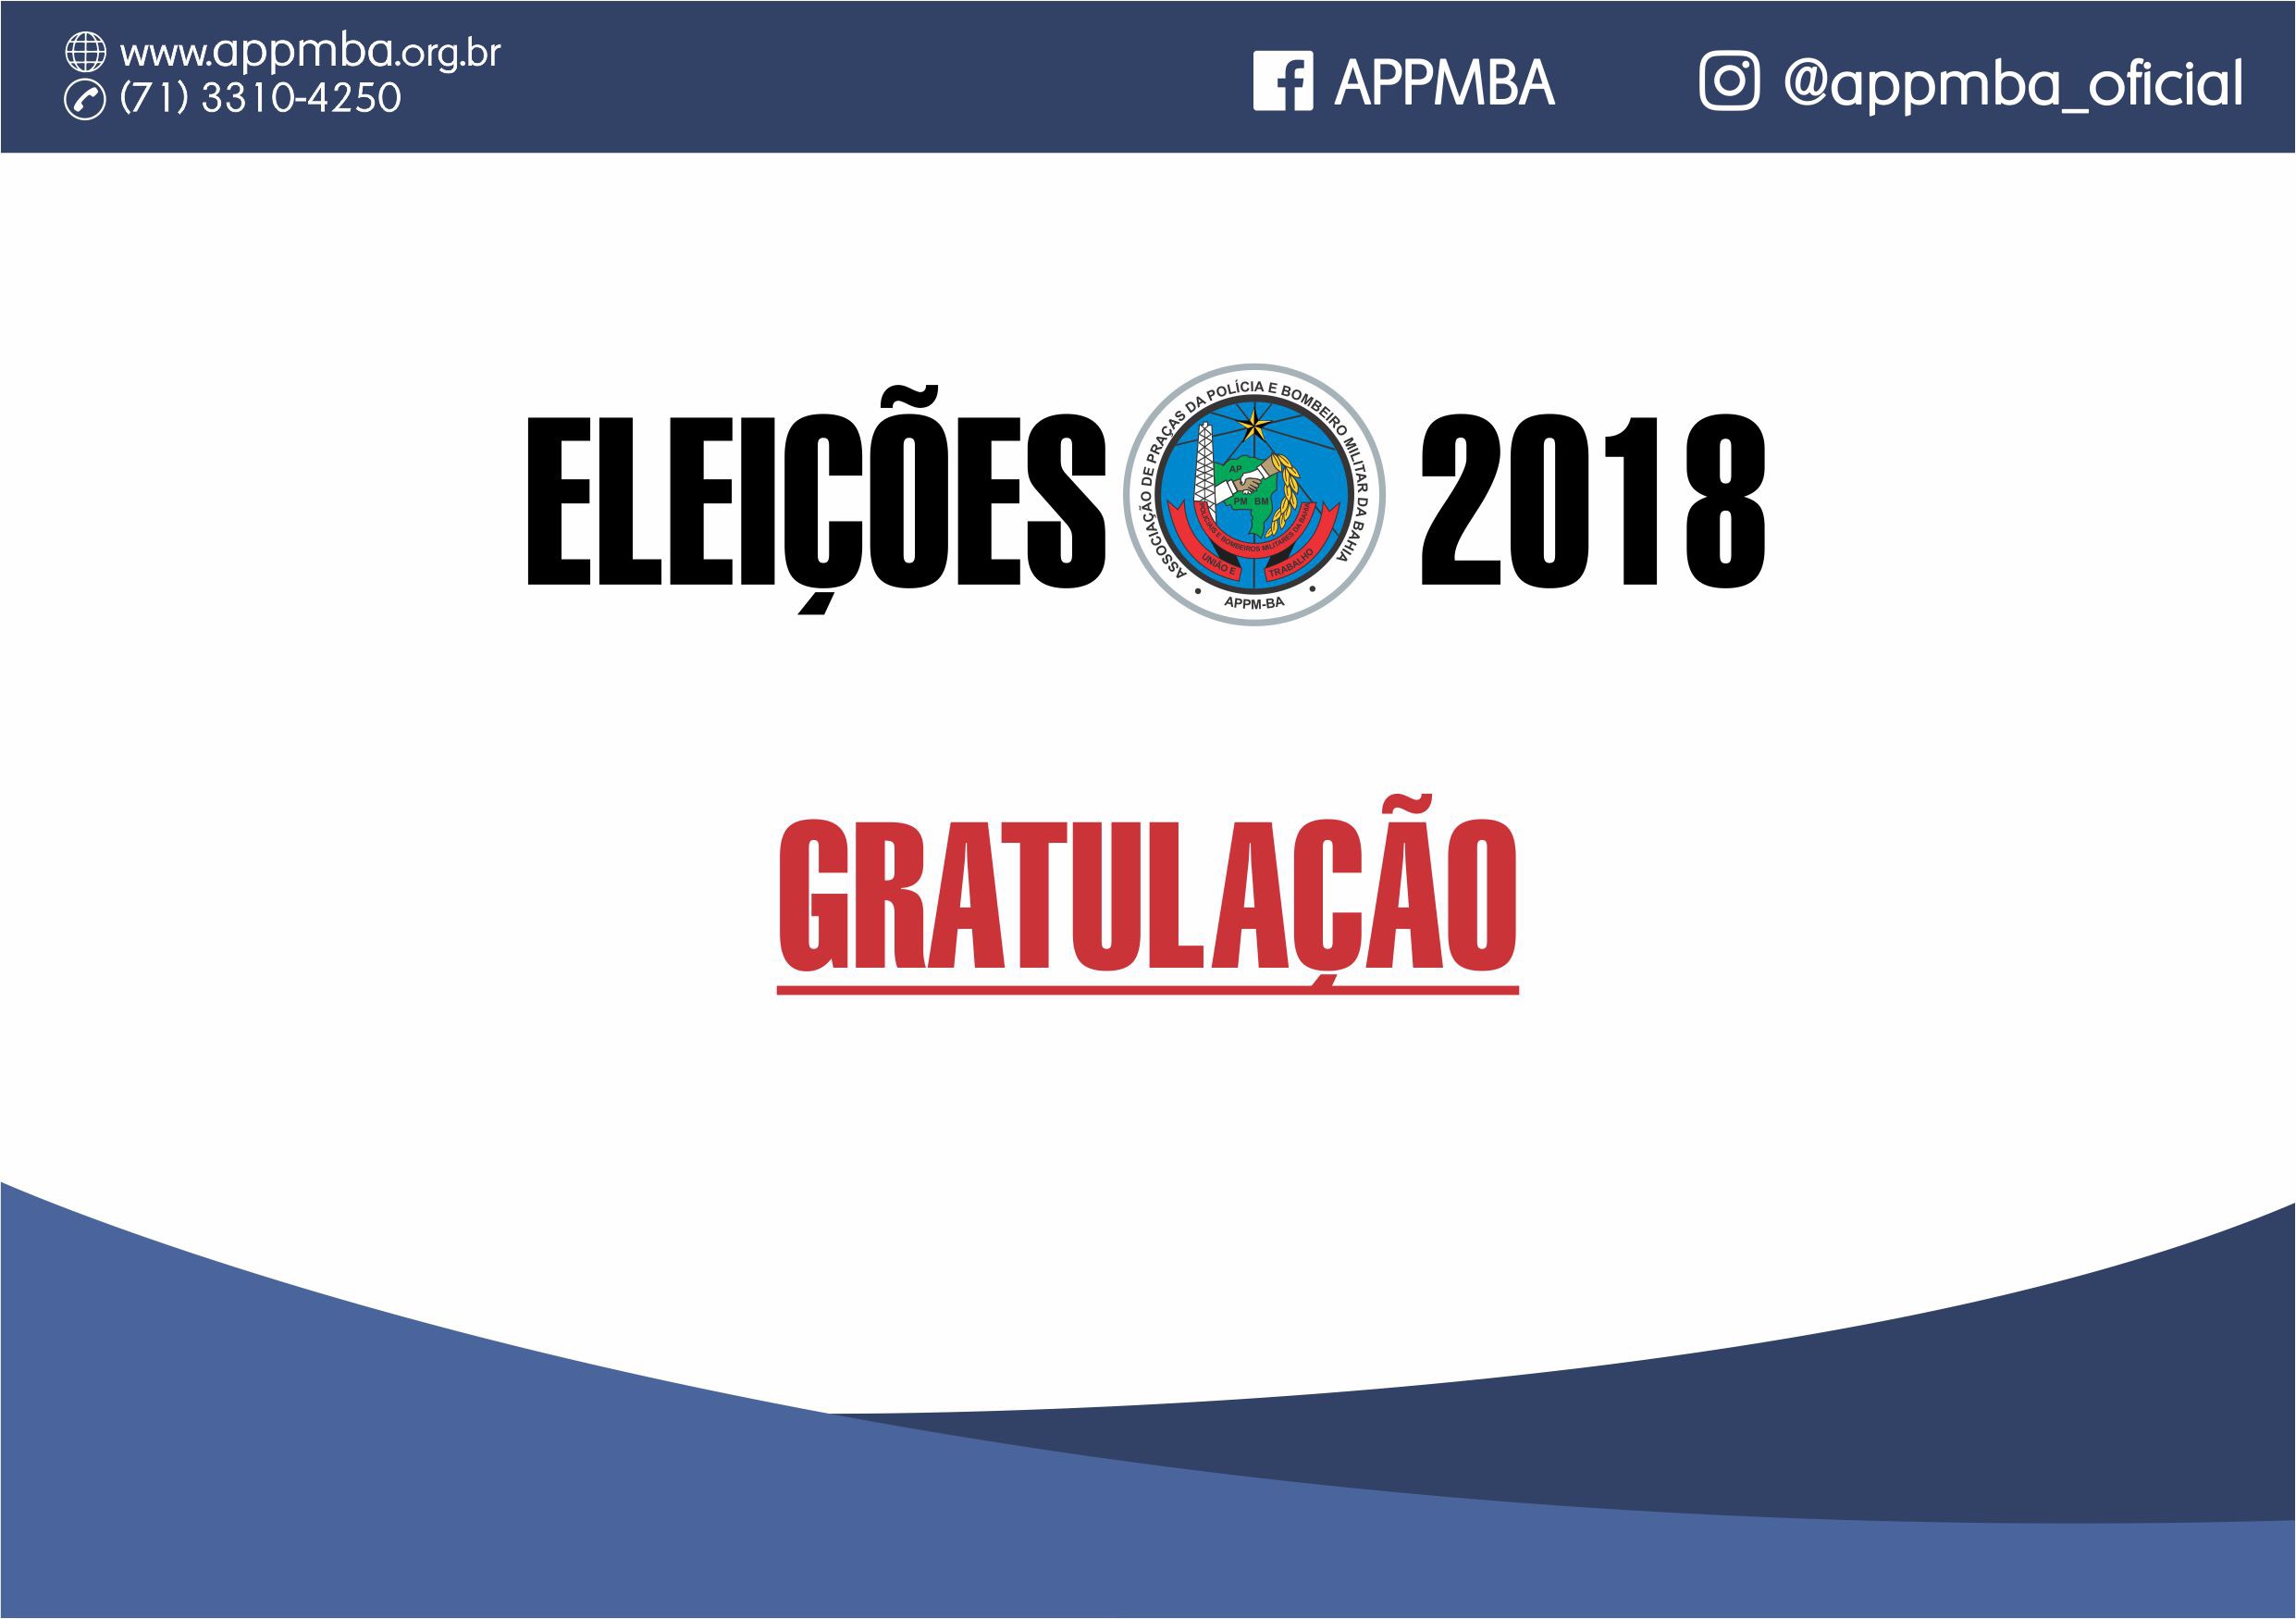 APPMBA agradece aos associados pela participação nas Eleições 2018